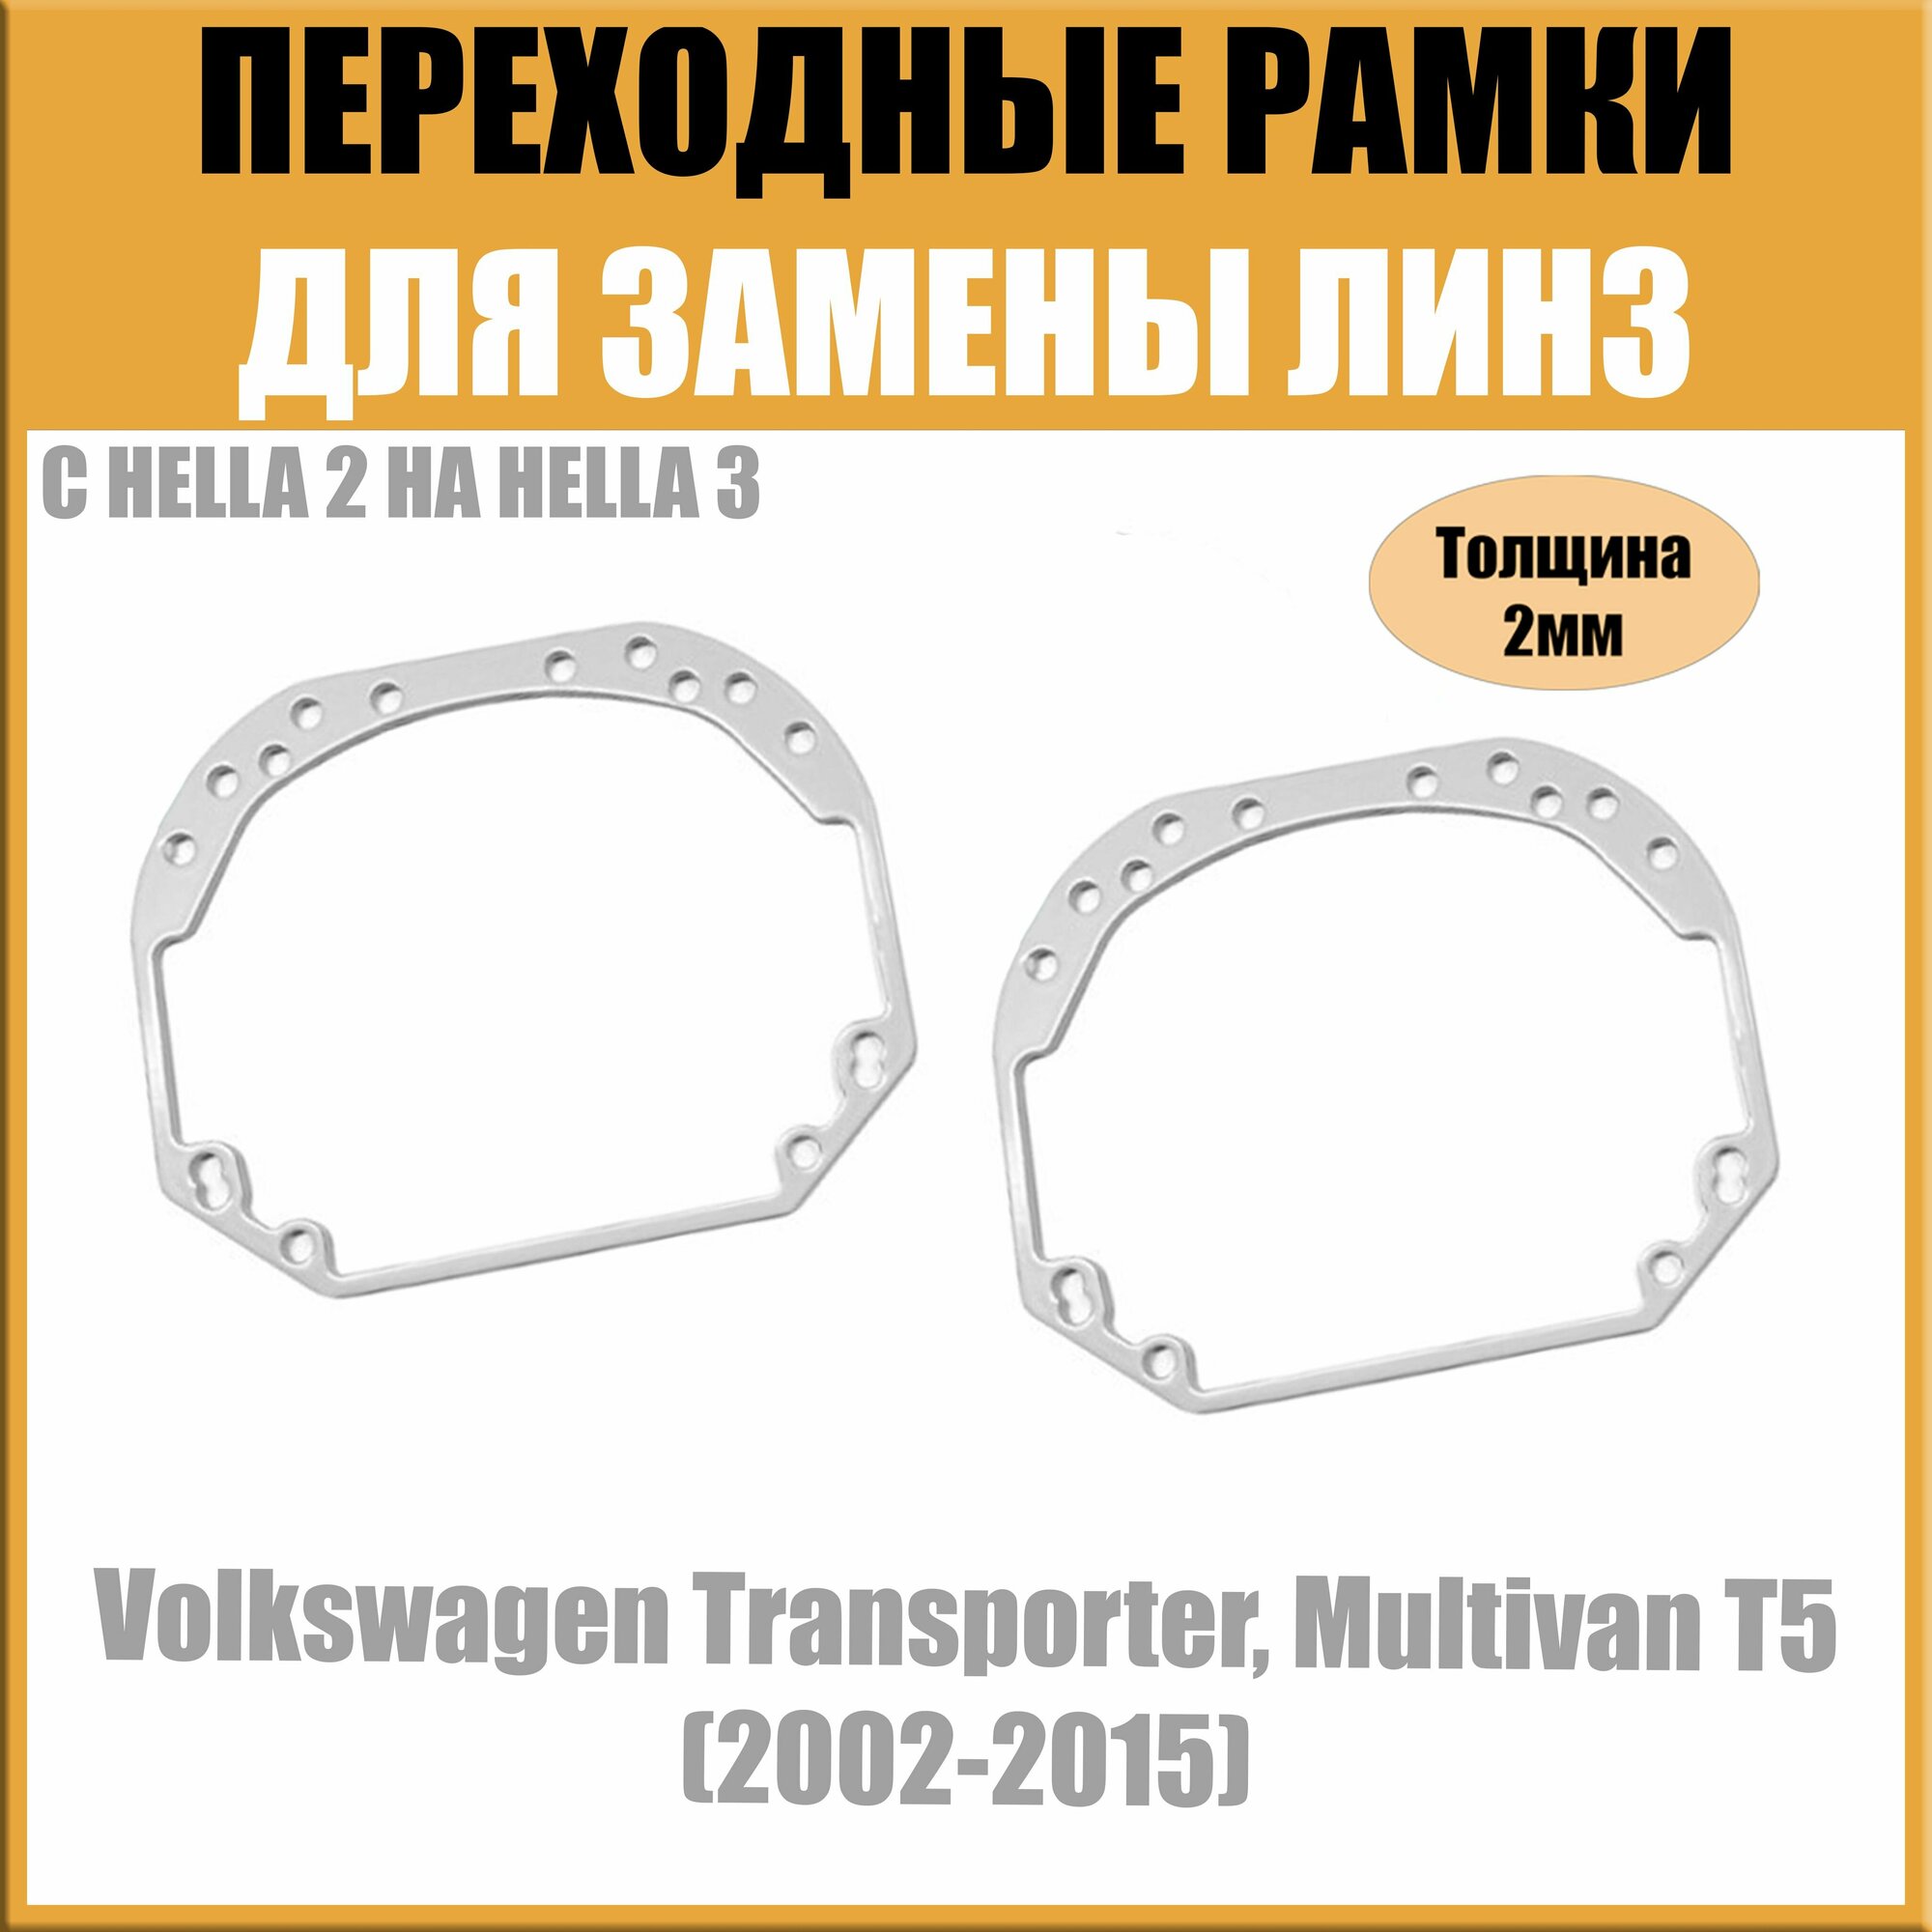 Переходные рамки для линз №1 на Volkswagen Transporter, Multivan T5 (2002-2015) под модуль Hella 3R/Hella 3 (Комплект, 2шт)